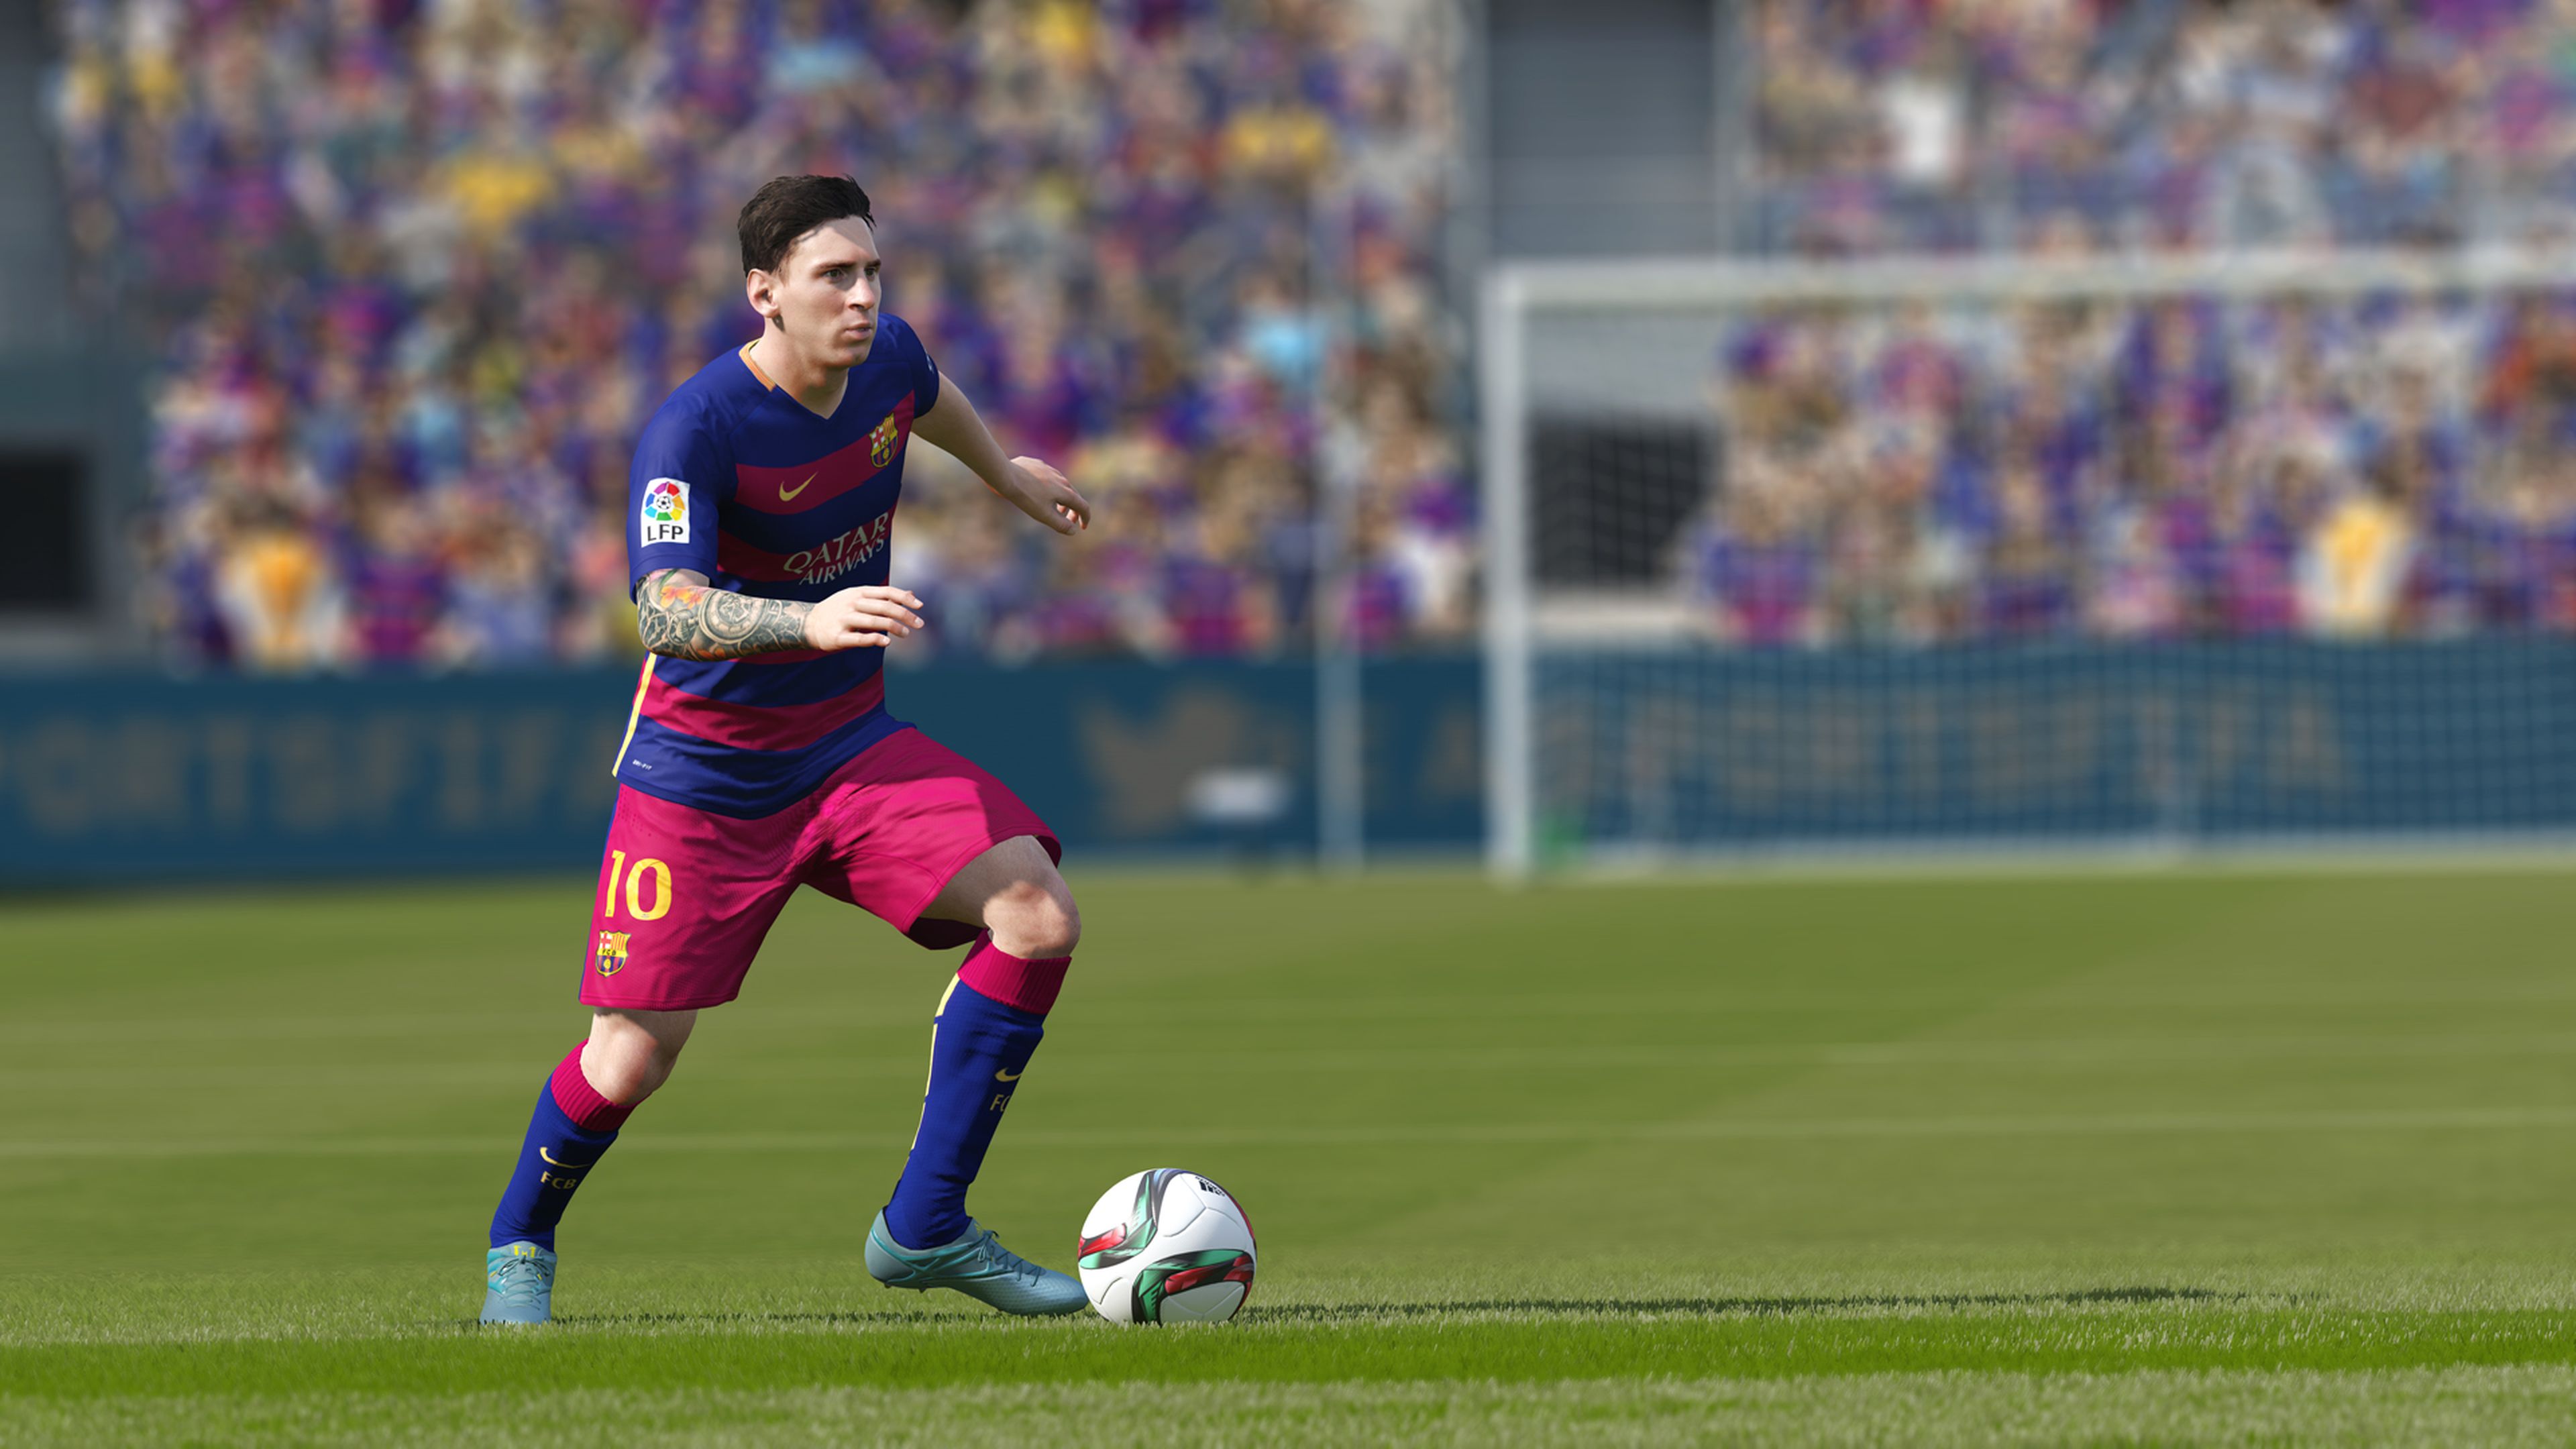 Análisis de FIFA 16 para PS4, Xbox One y PC